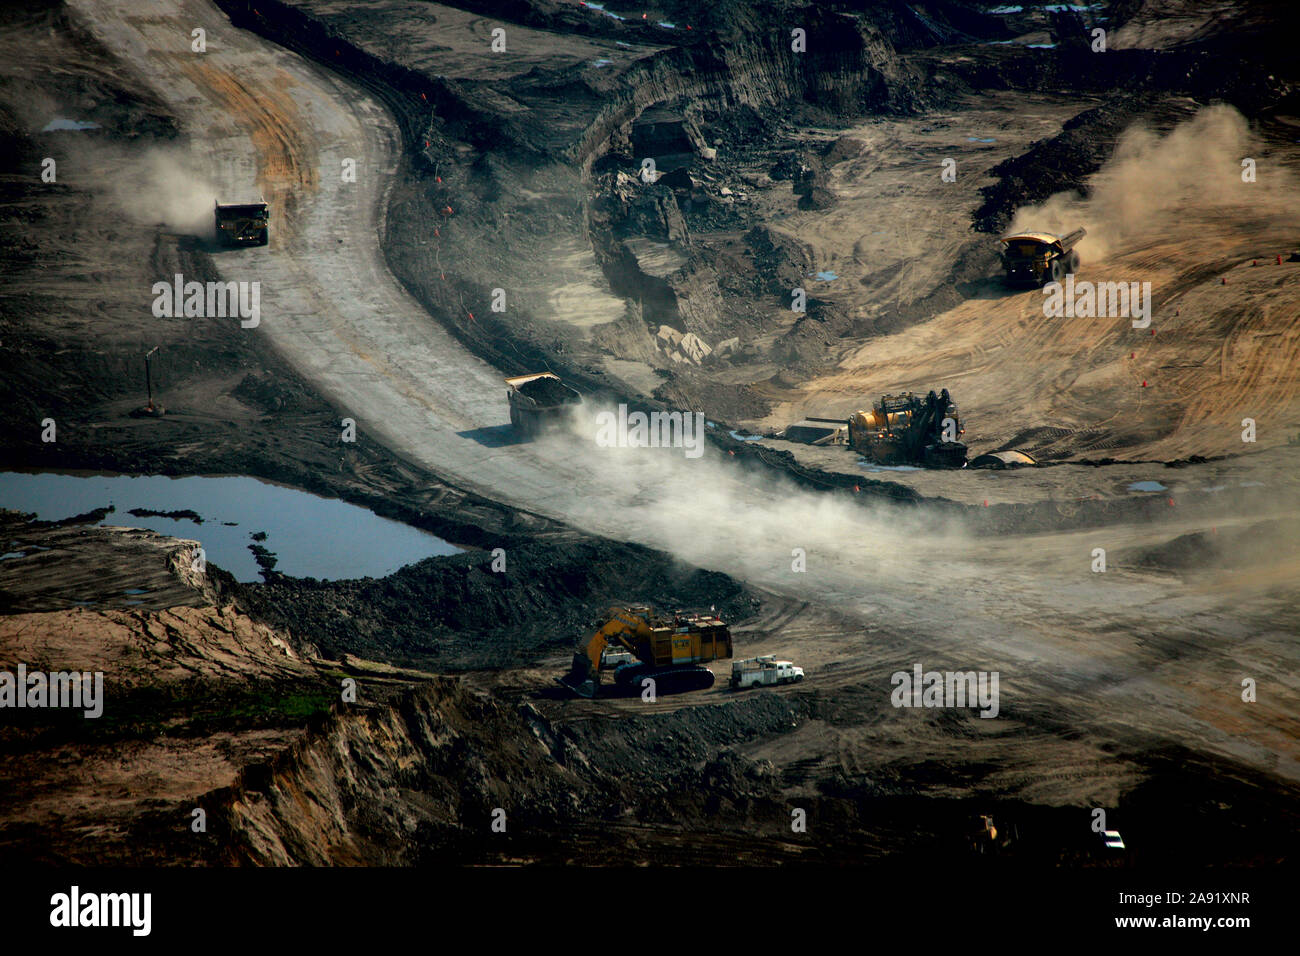 Excavación de arenas petrolíferas en una de las minas de arenas petrolíferas en Fort McMurray en Alberta, Canadá. El depósito de Arenas Petrolíferas de Athabasca es uno de los mayores del mundo. El betún, también comúnmente denominado tar (de ahí las arenas de alquitrán), que contiene una gran cantidad de hidrocarburos, pero es tremendamente difícil de extraer. Por cada 100 Btu de energía extraída, 70 BTU se pierde en el proceso. Solamente en 2011, las operaciones de arenas petrolíferas en Canadá produjo 55 millones de toneladas de emisiones de gases de efecto invernadero". Eso es el ocho por ciento de las emisiones totales de Canadá. Foto de stock